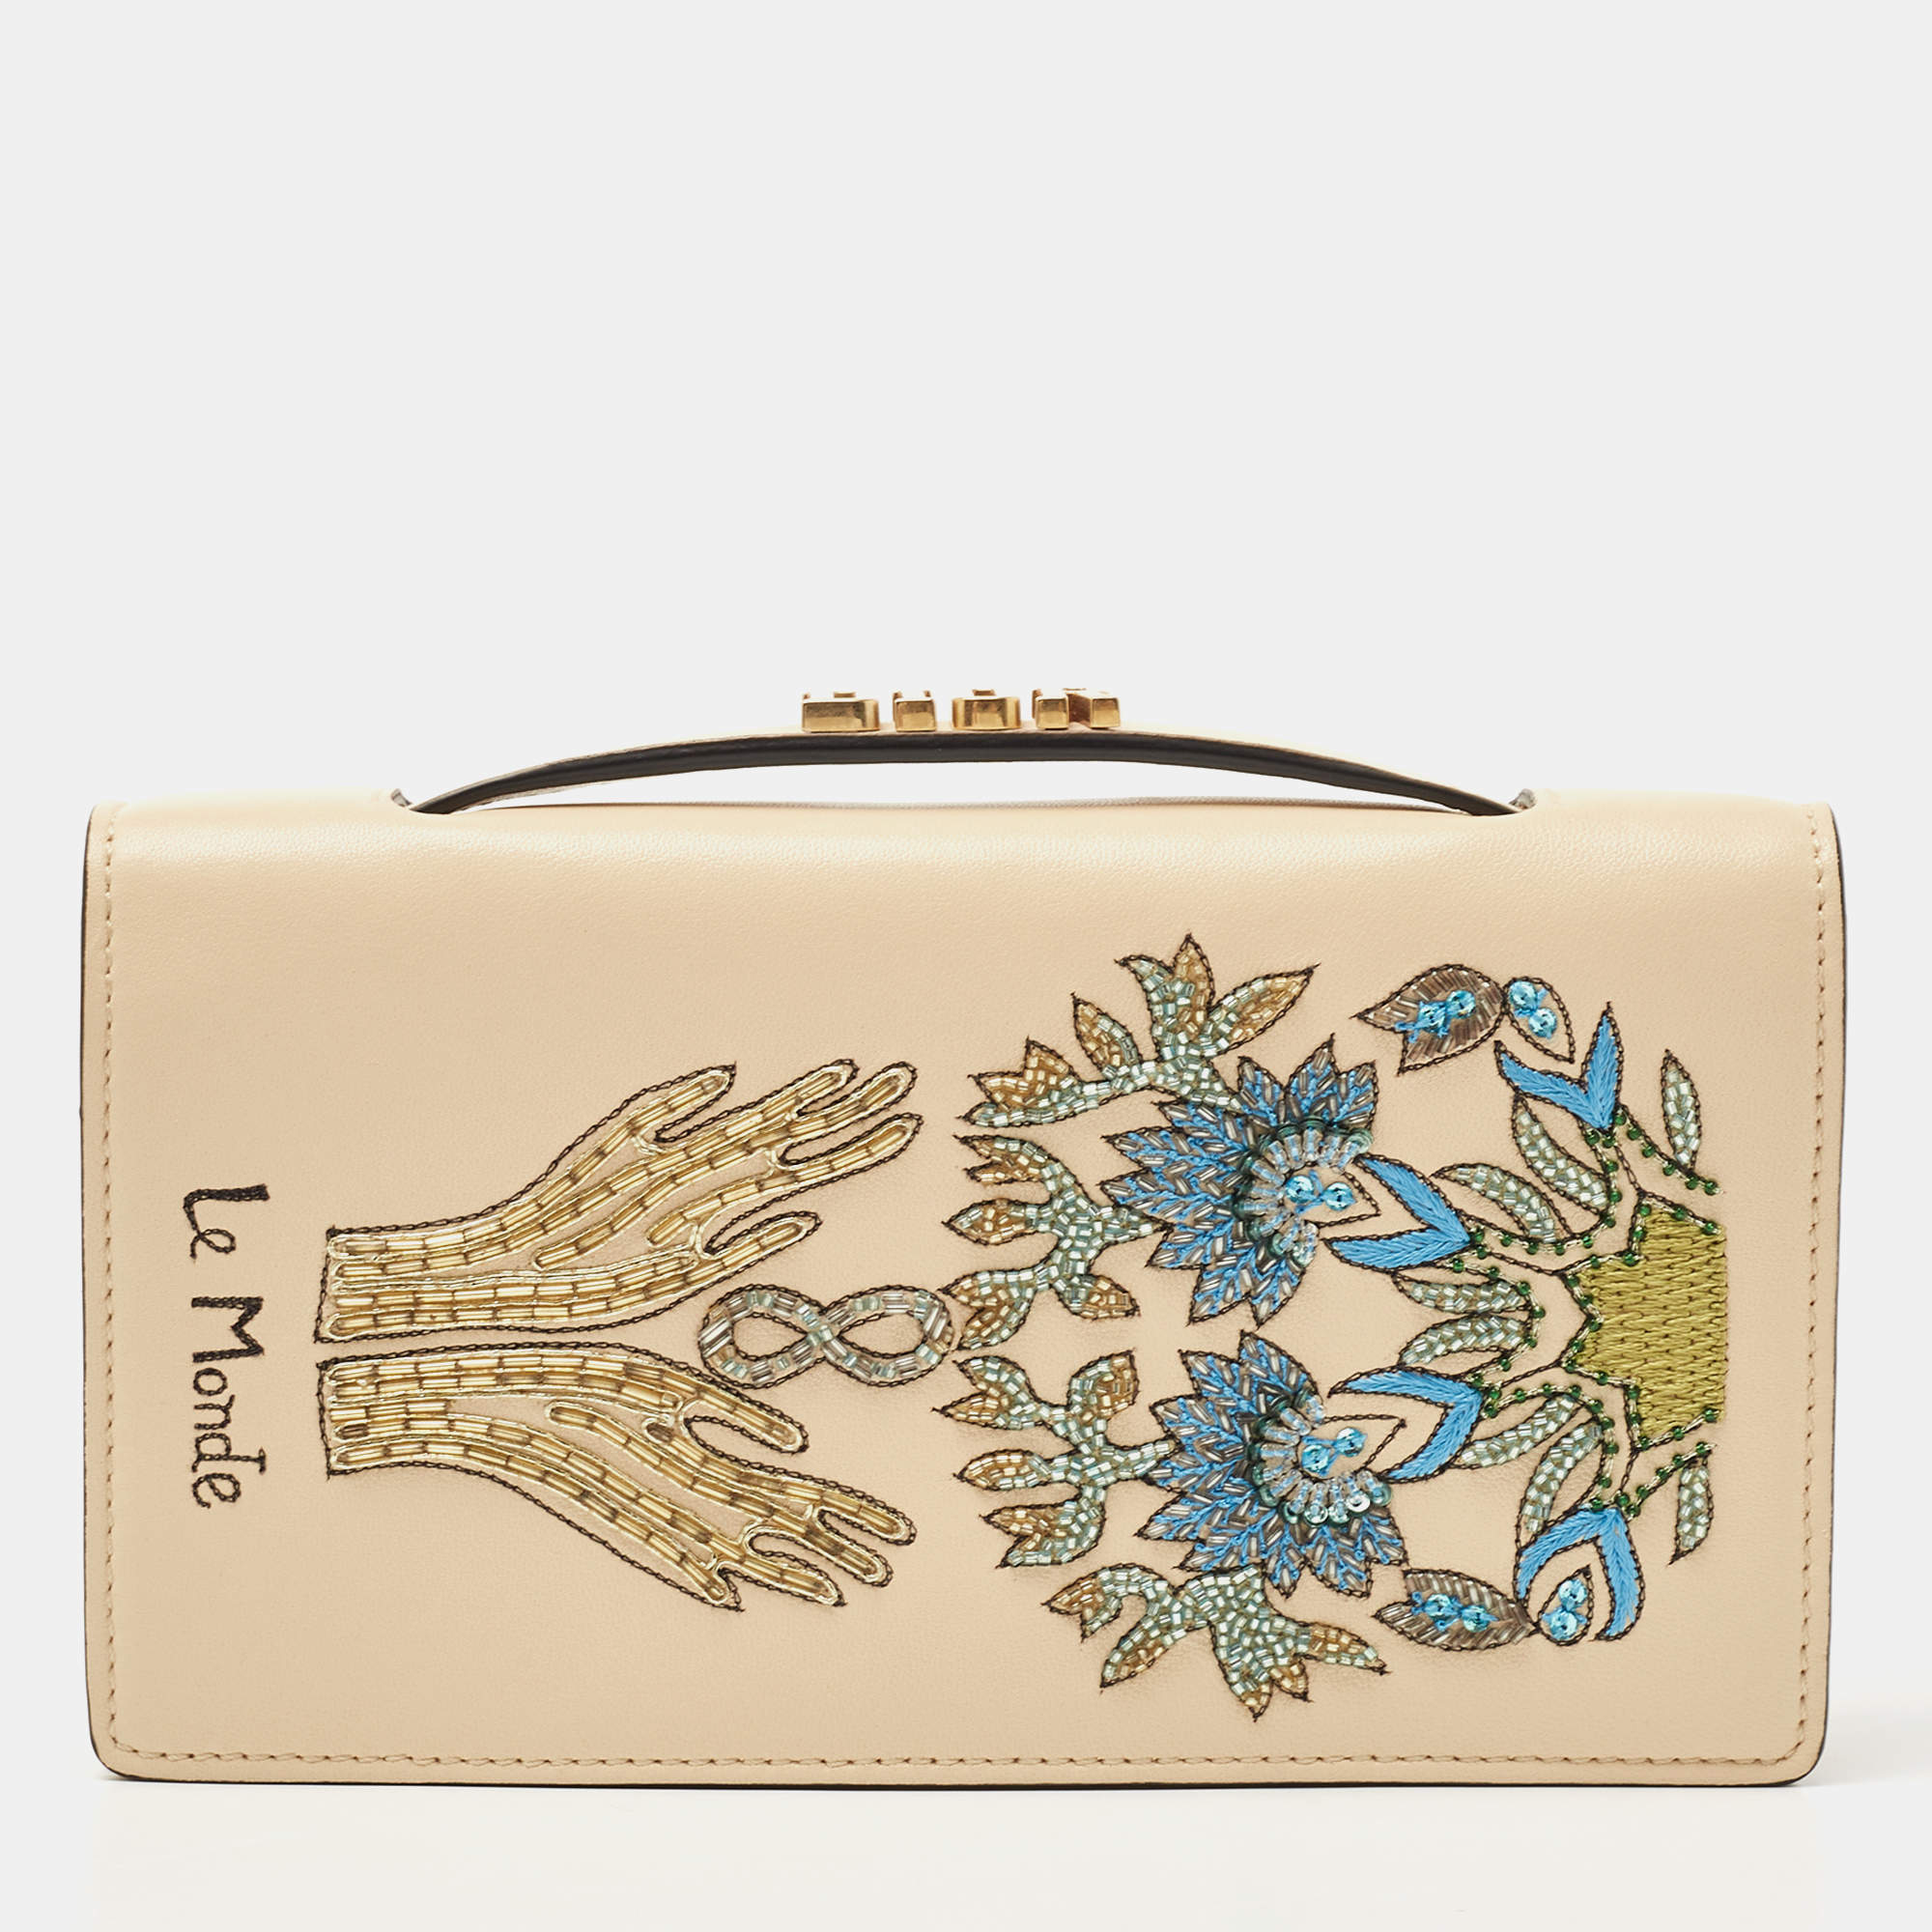 Mini Dior Book Tote Phone Bag Beige Multicolor Mizza Embroidery 13 x 18 x  5 cm  DIOR